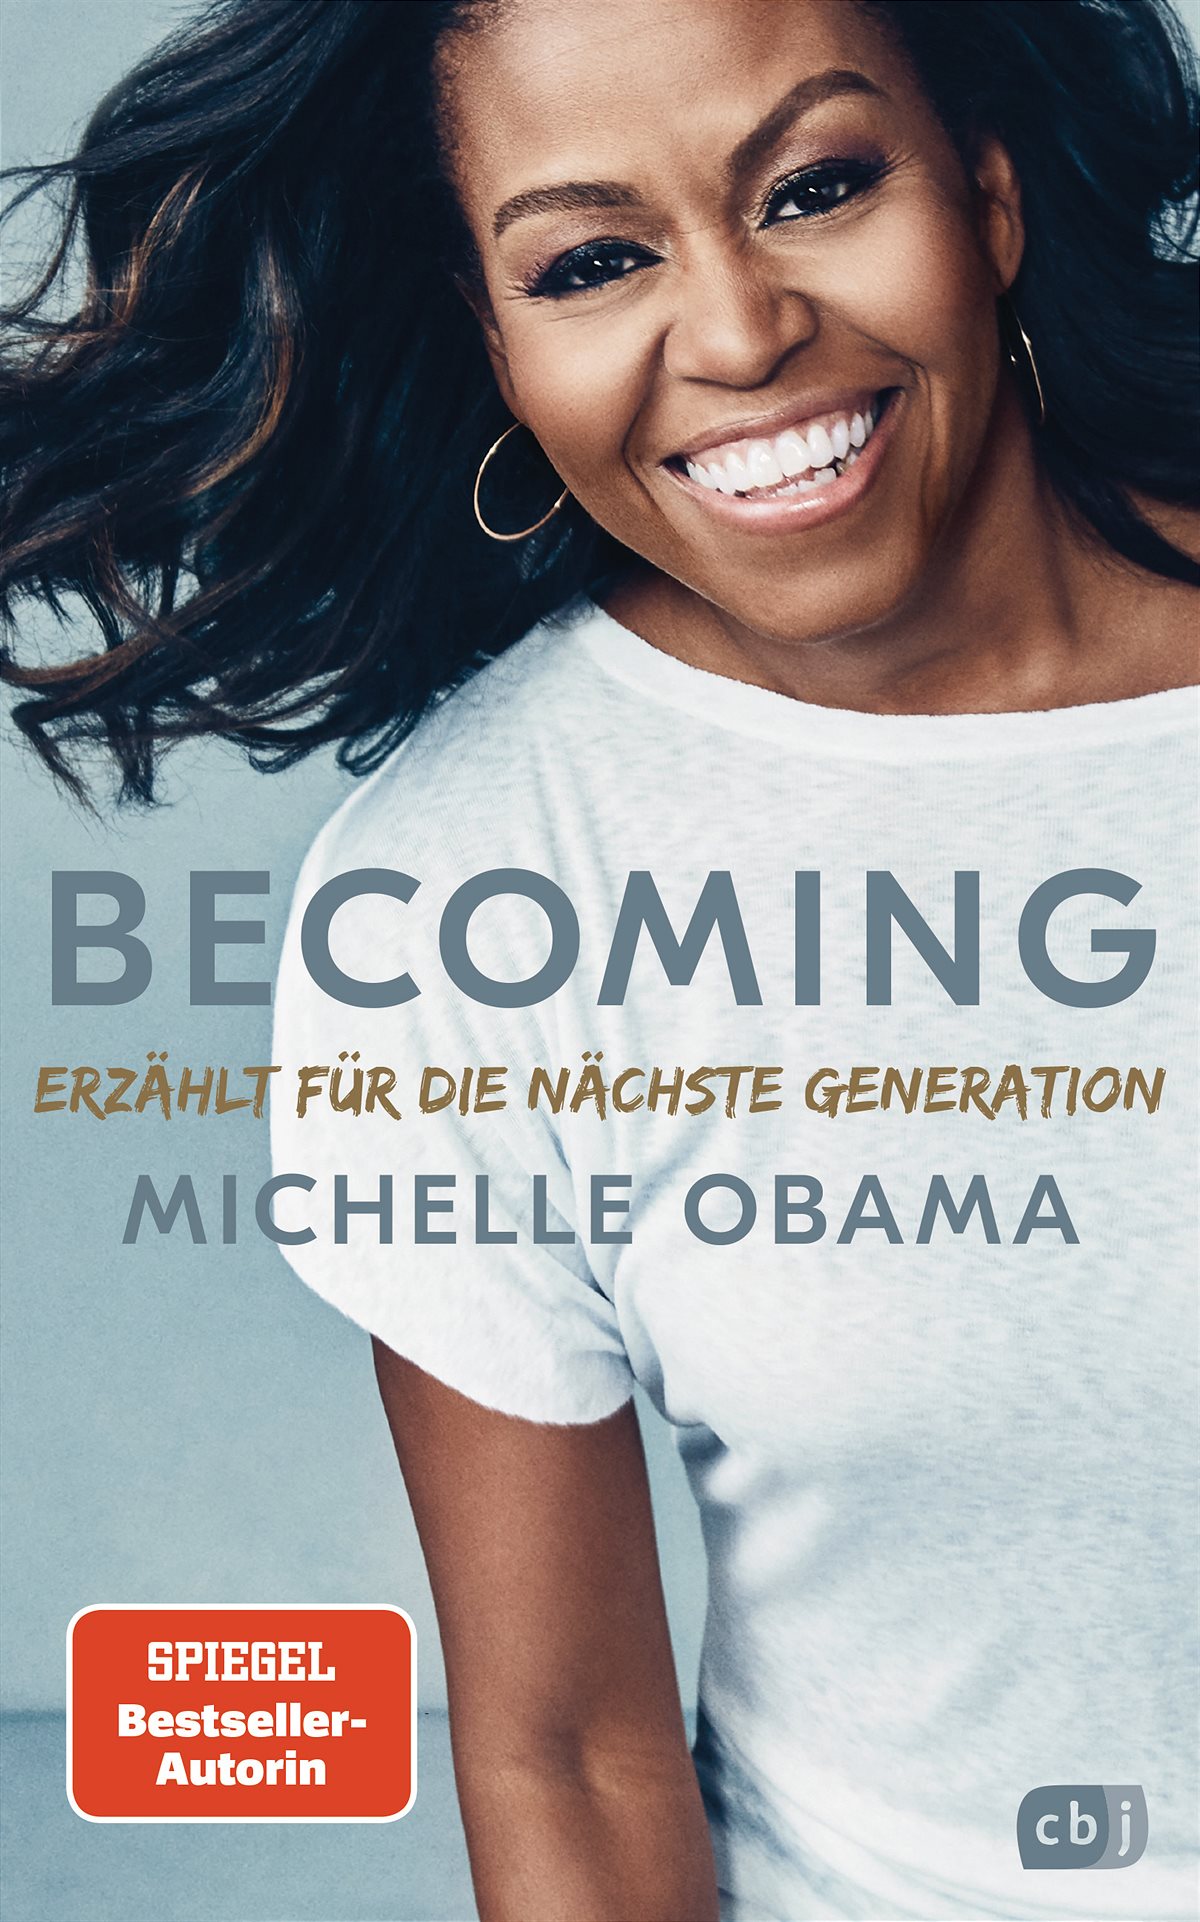 Obama - Becoming - Erzählt für die nächste Generation